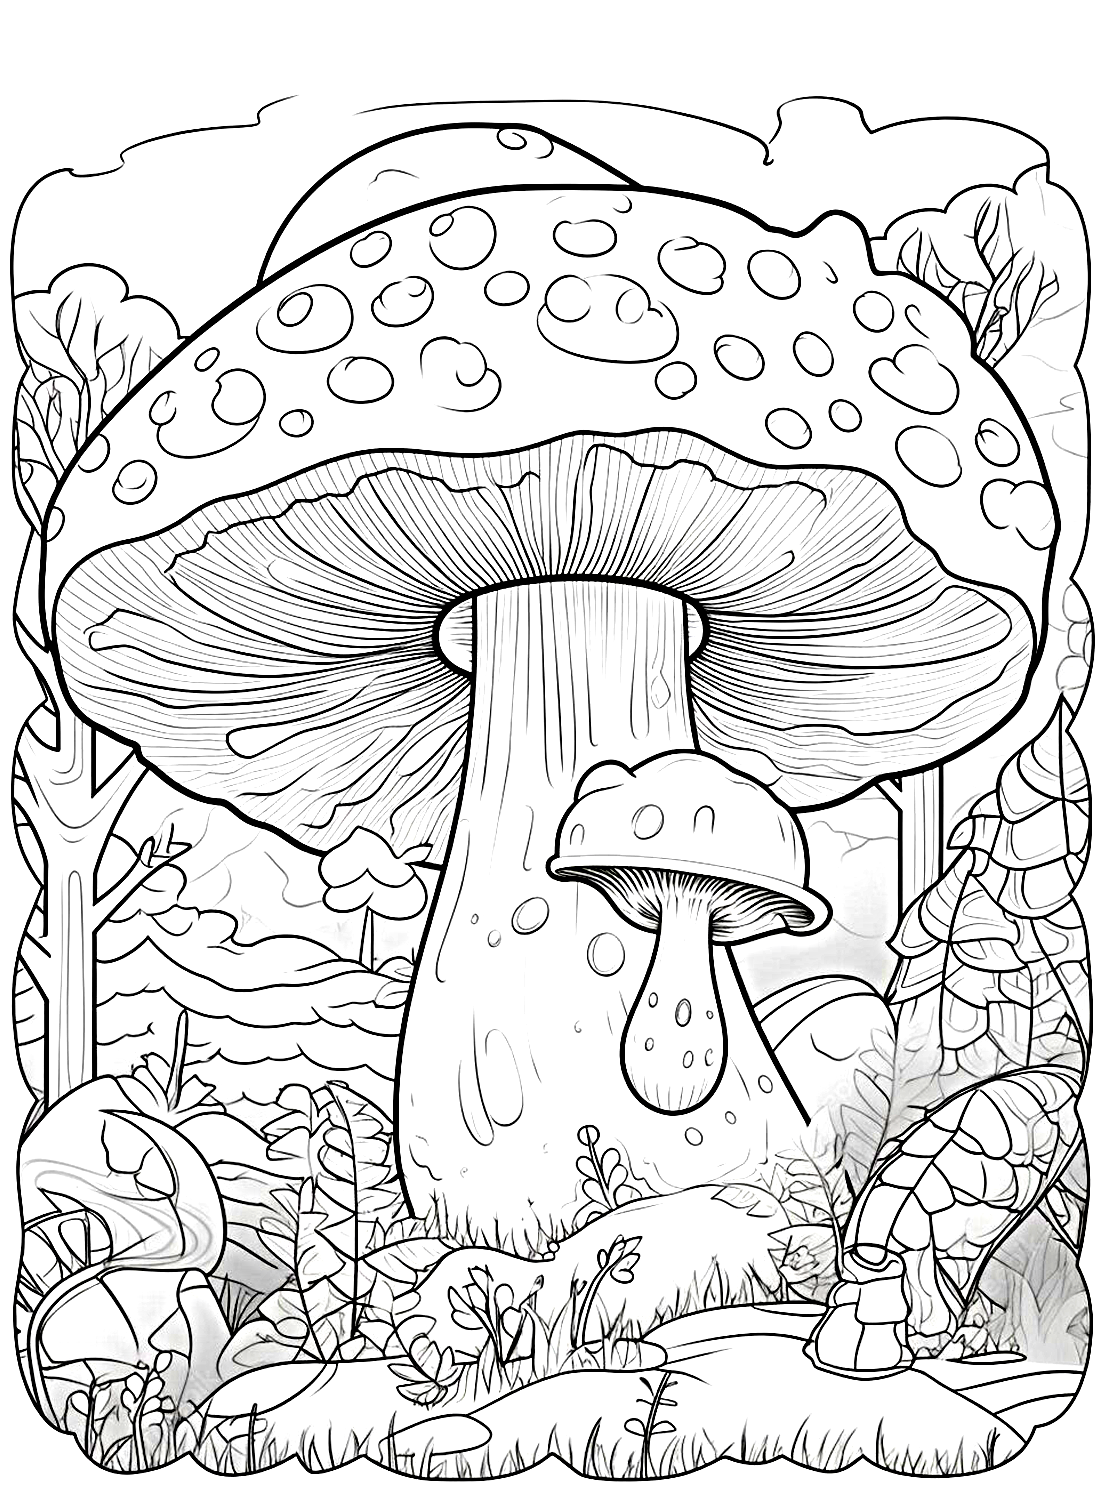 蘑菇中的巨型蘑菇图片